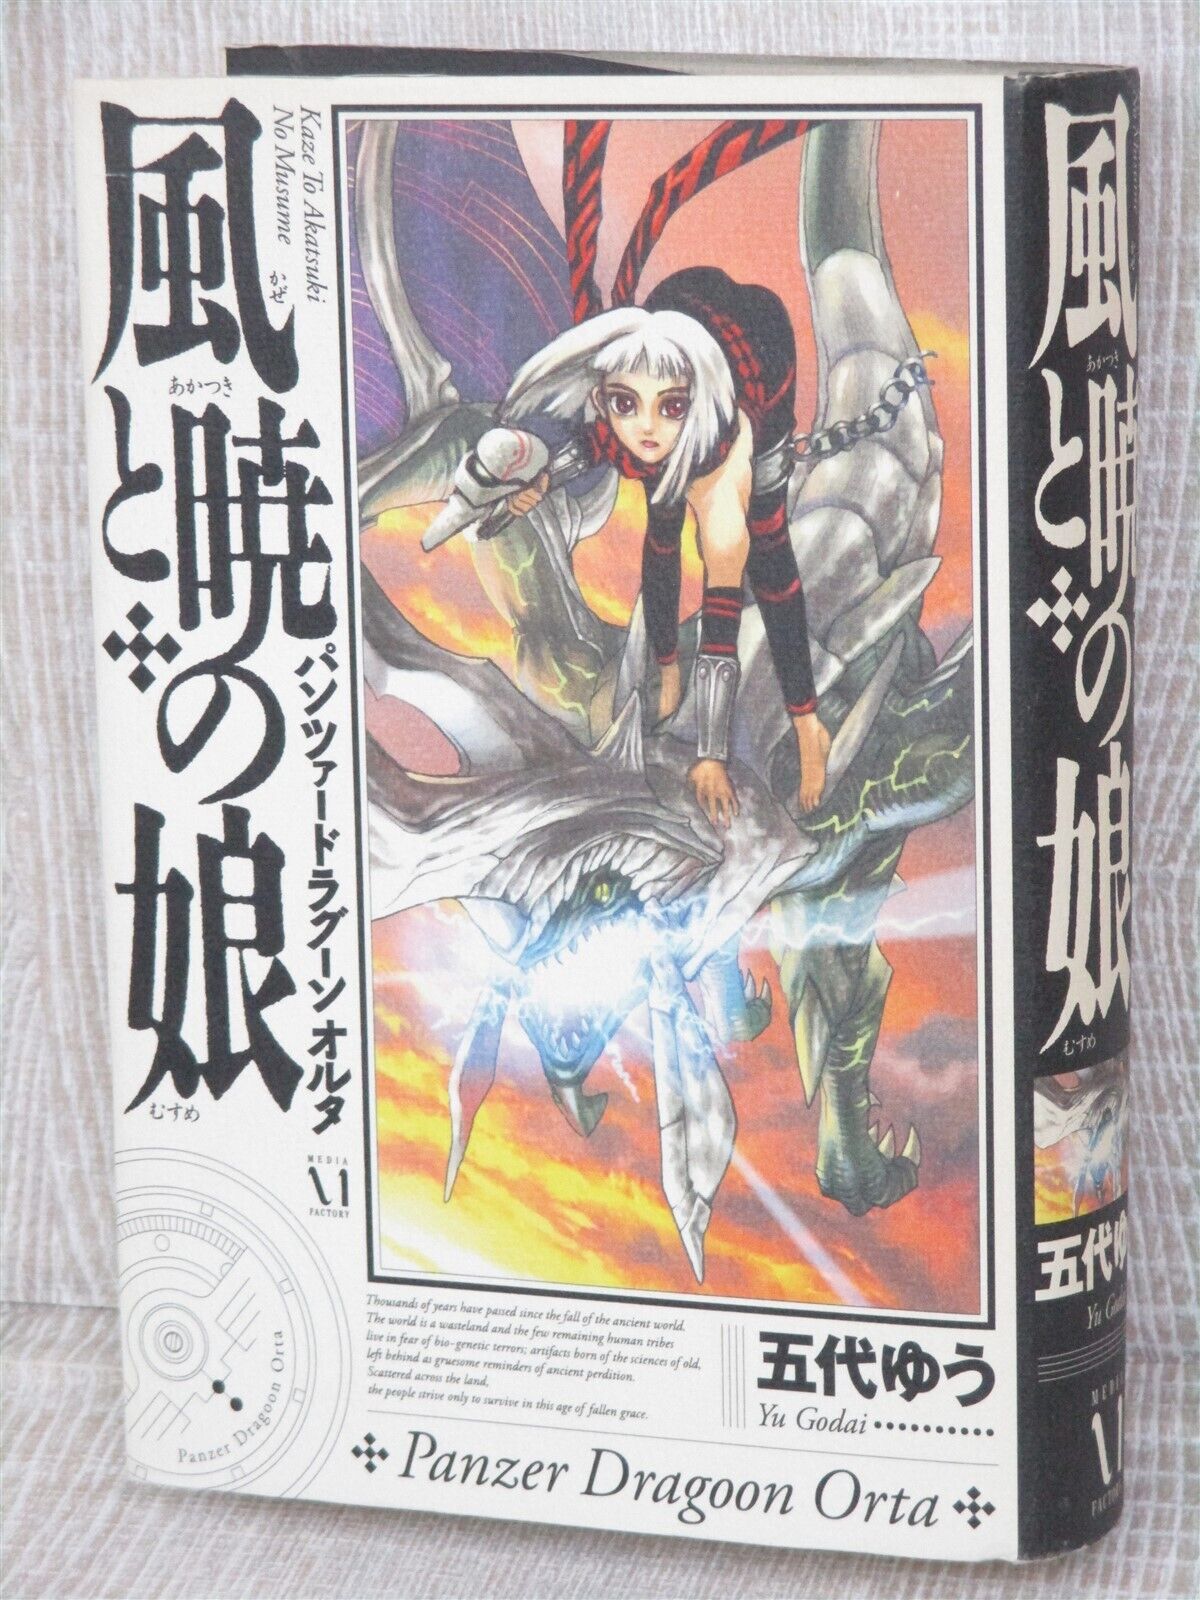 PANZER DRAGOON ORTA Kaze to Akatsuki no Musume Novel YU GODAI Xbox Book 2004 MF